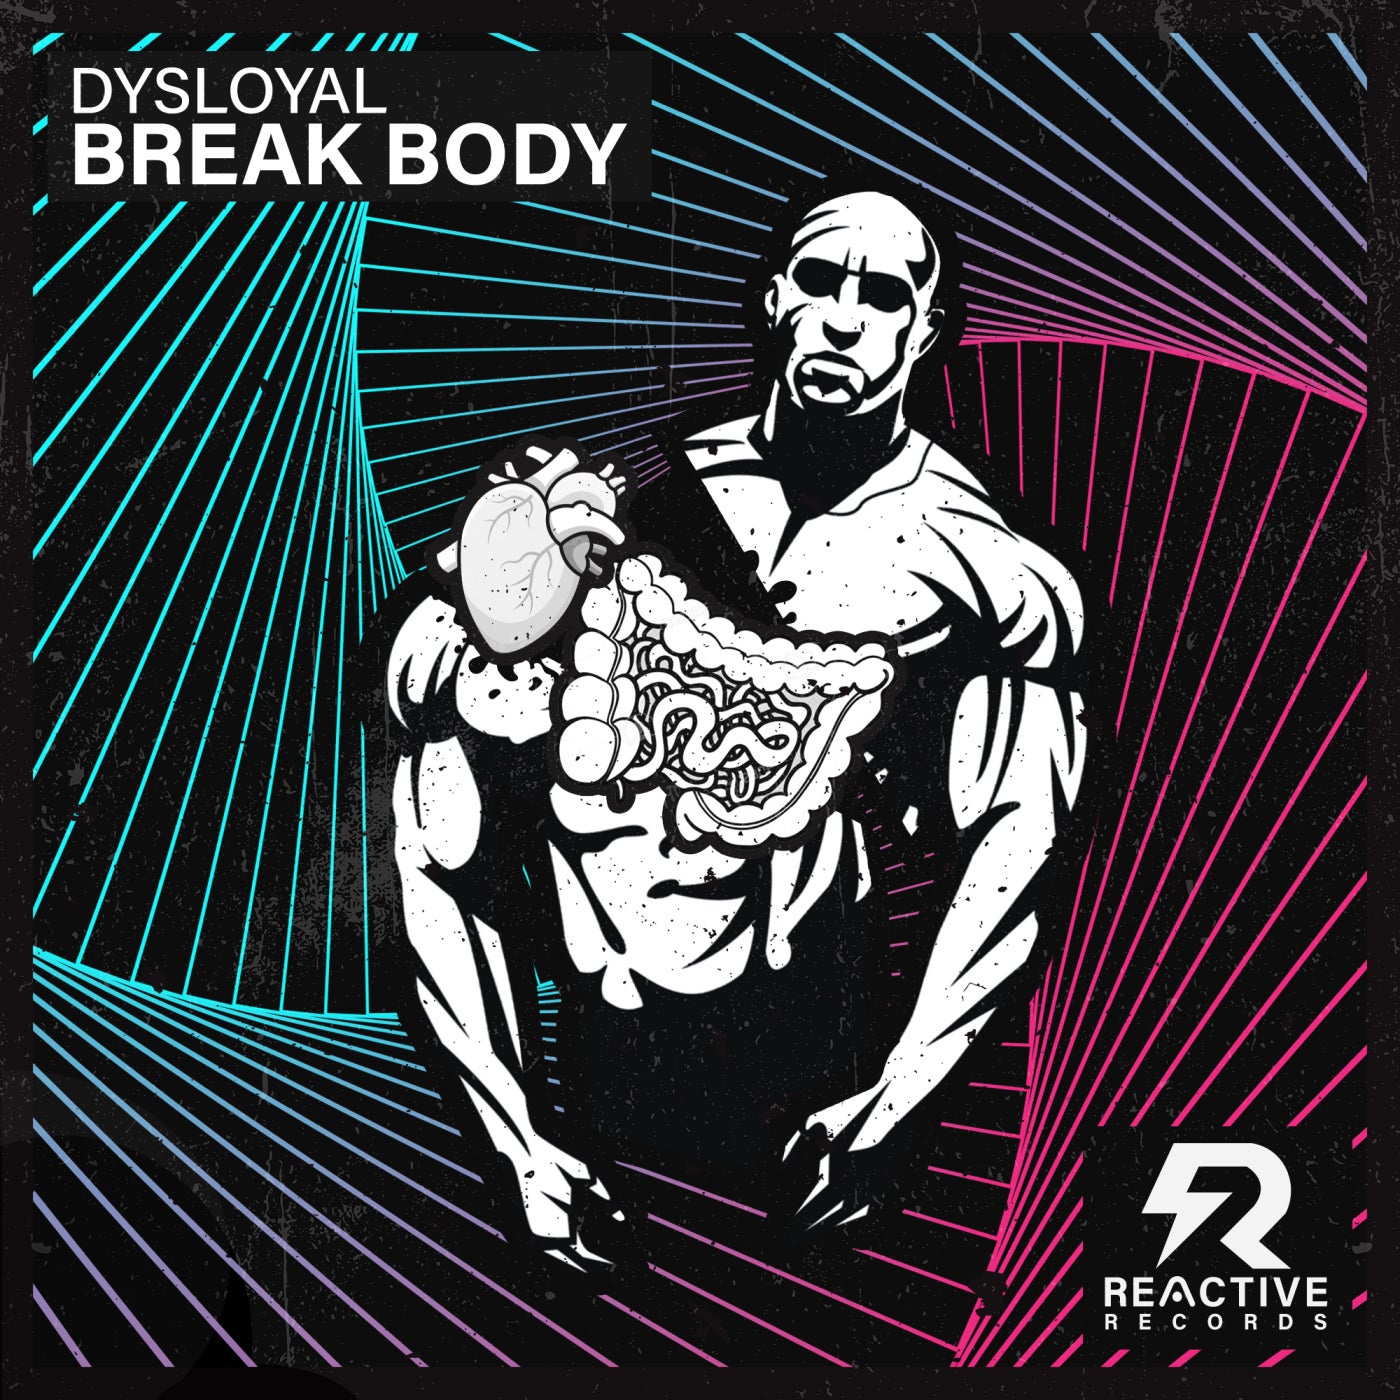 Break Body